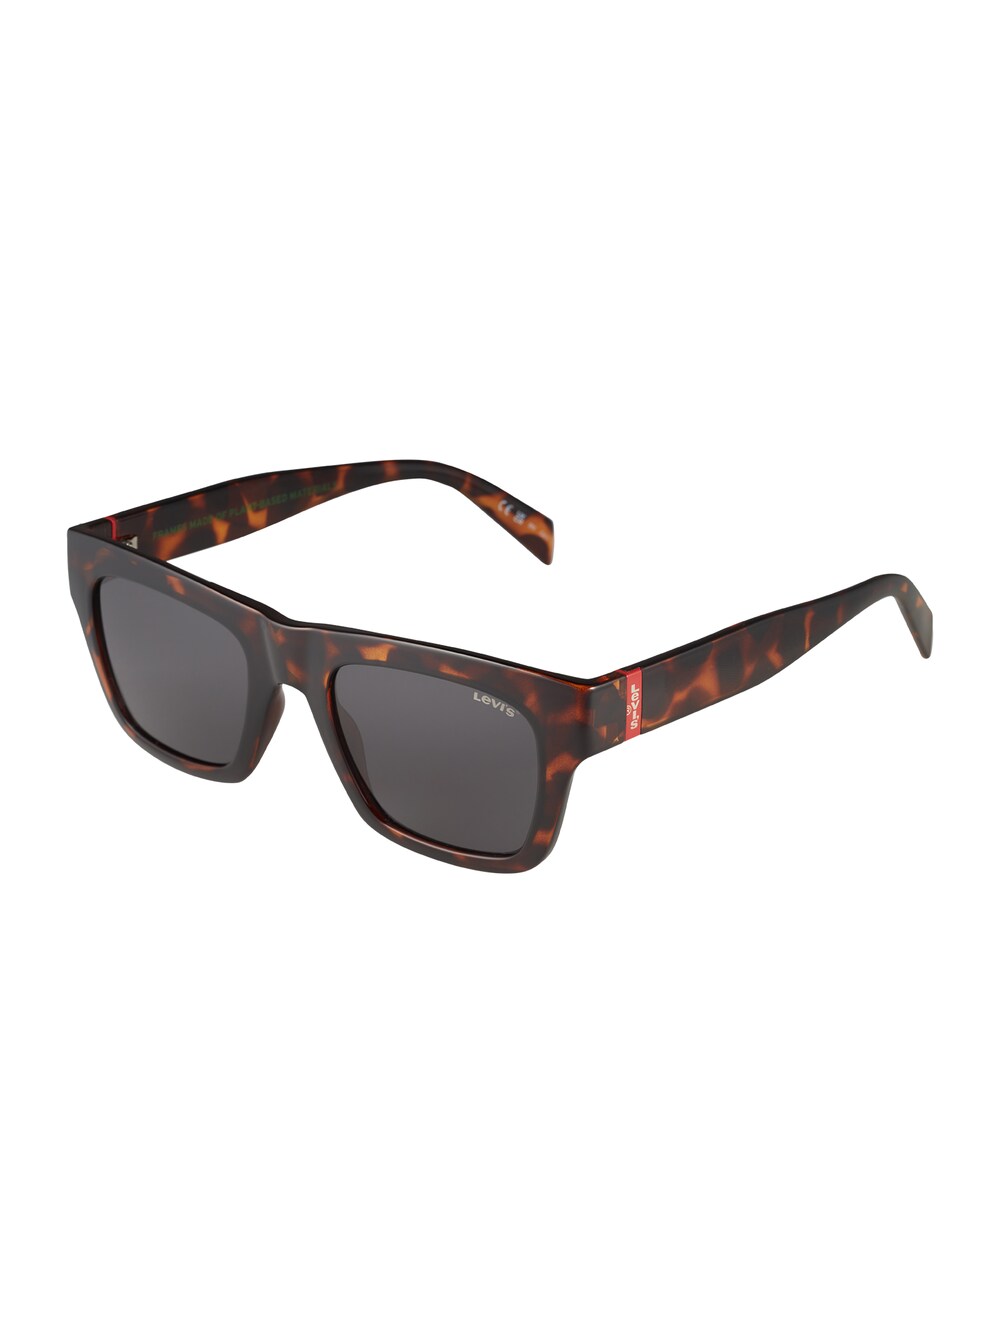 цена Солнечные очки LEVIS 1026/S, охра/темно-коричневый